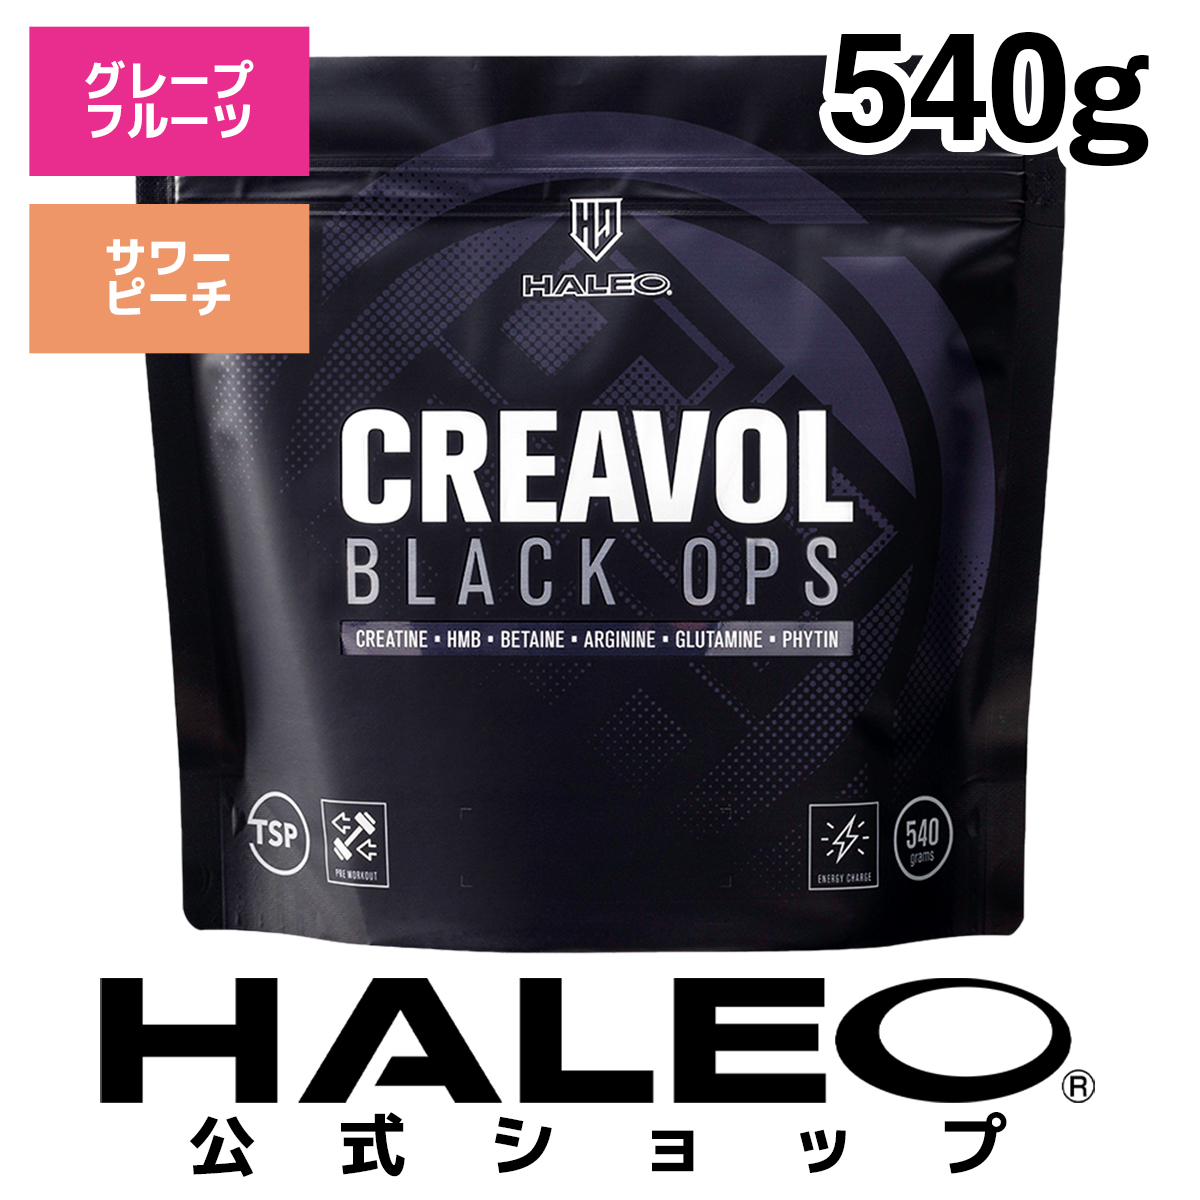 HALEO ハレオ クレアボルブラックオプス CREAVOL BLACK OPS クレアチン アルギニン グルタミン ベタイン HMB